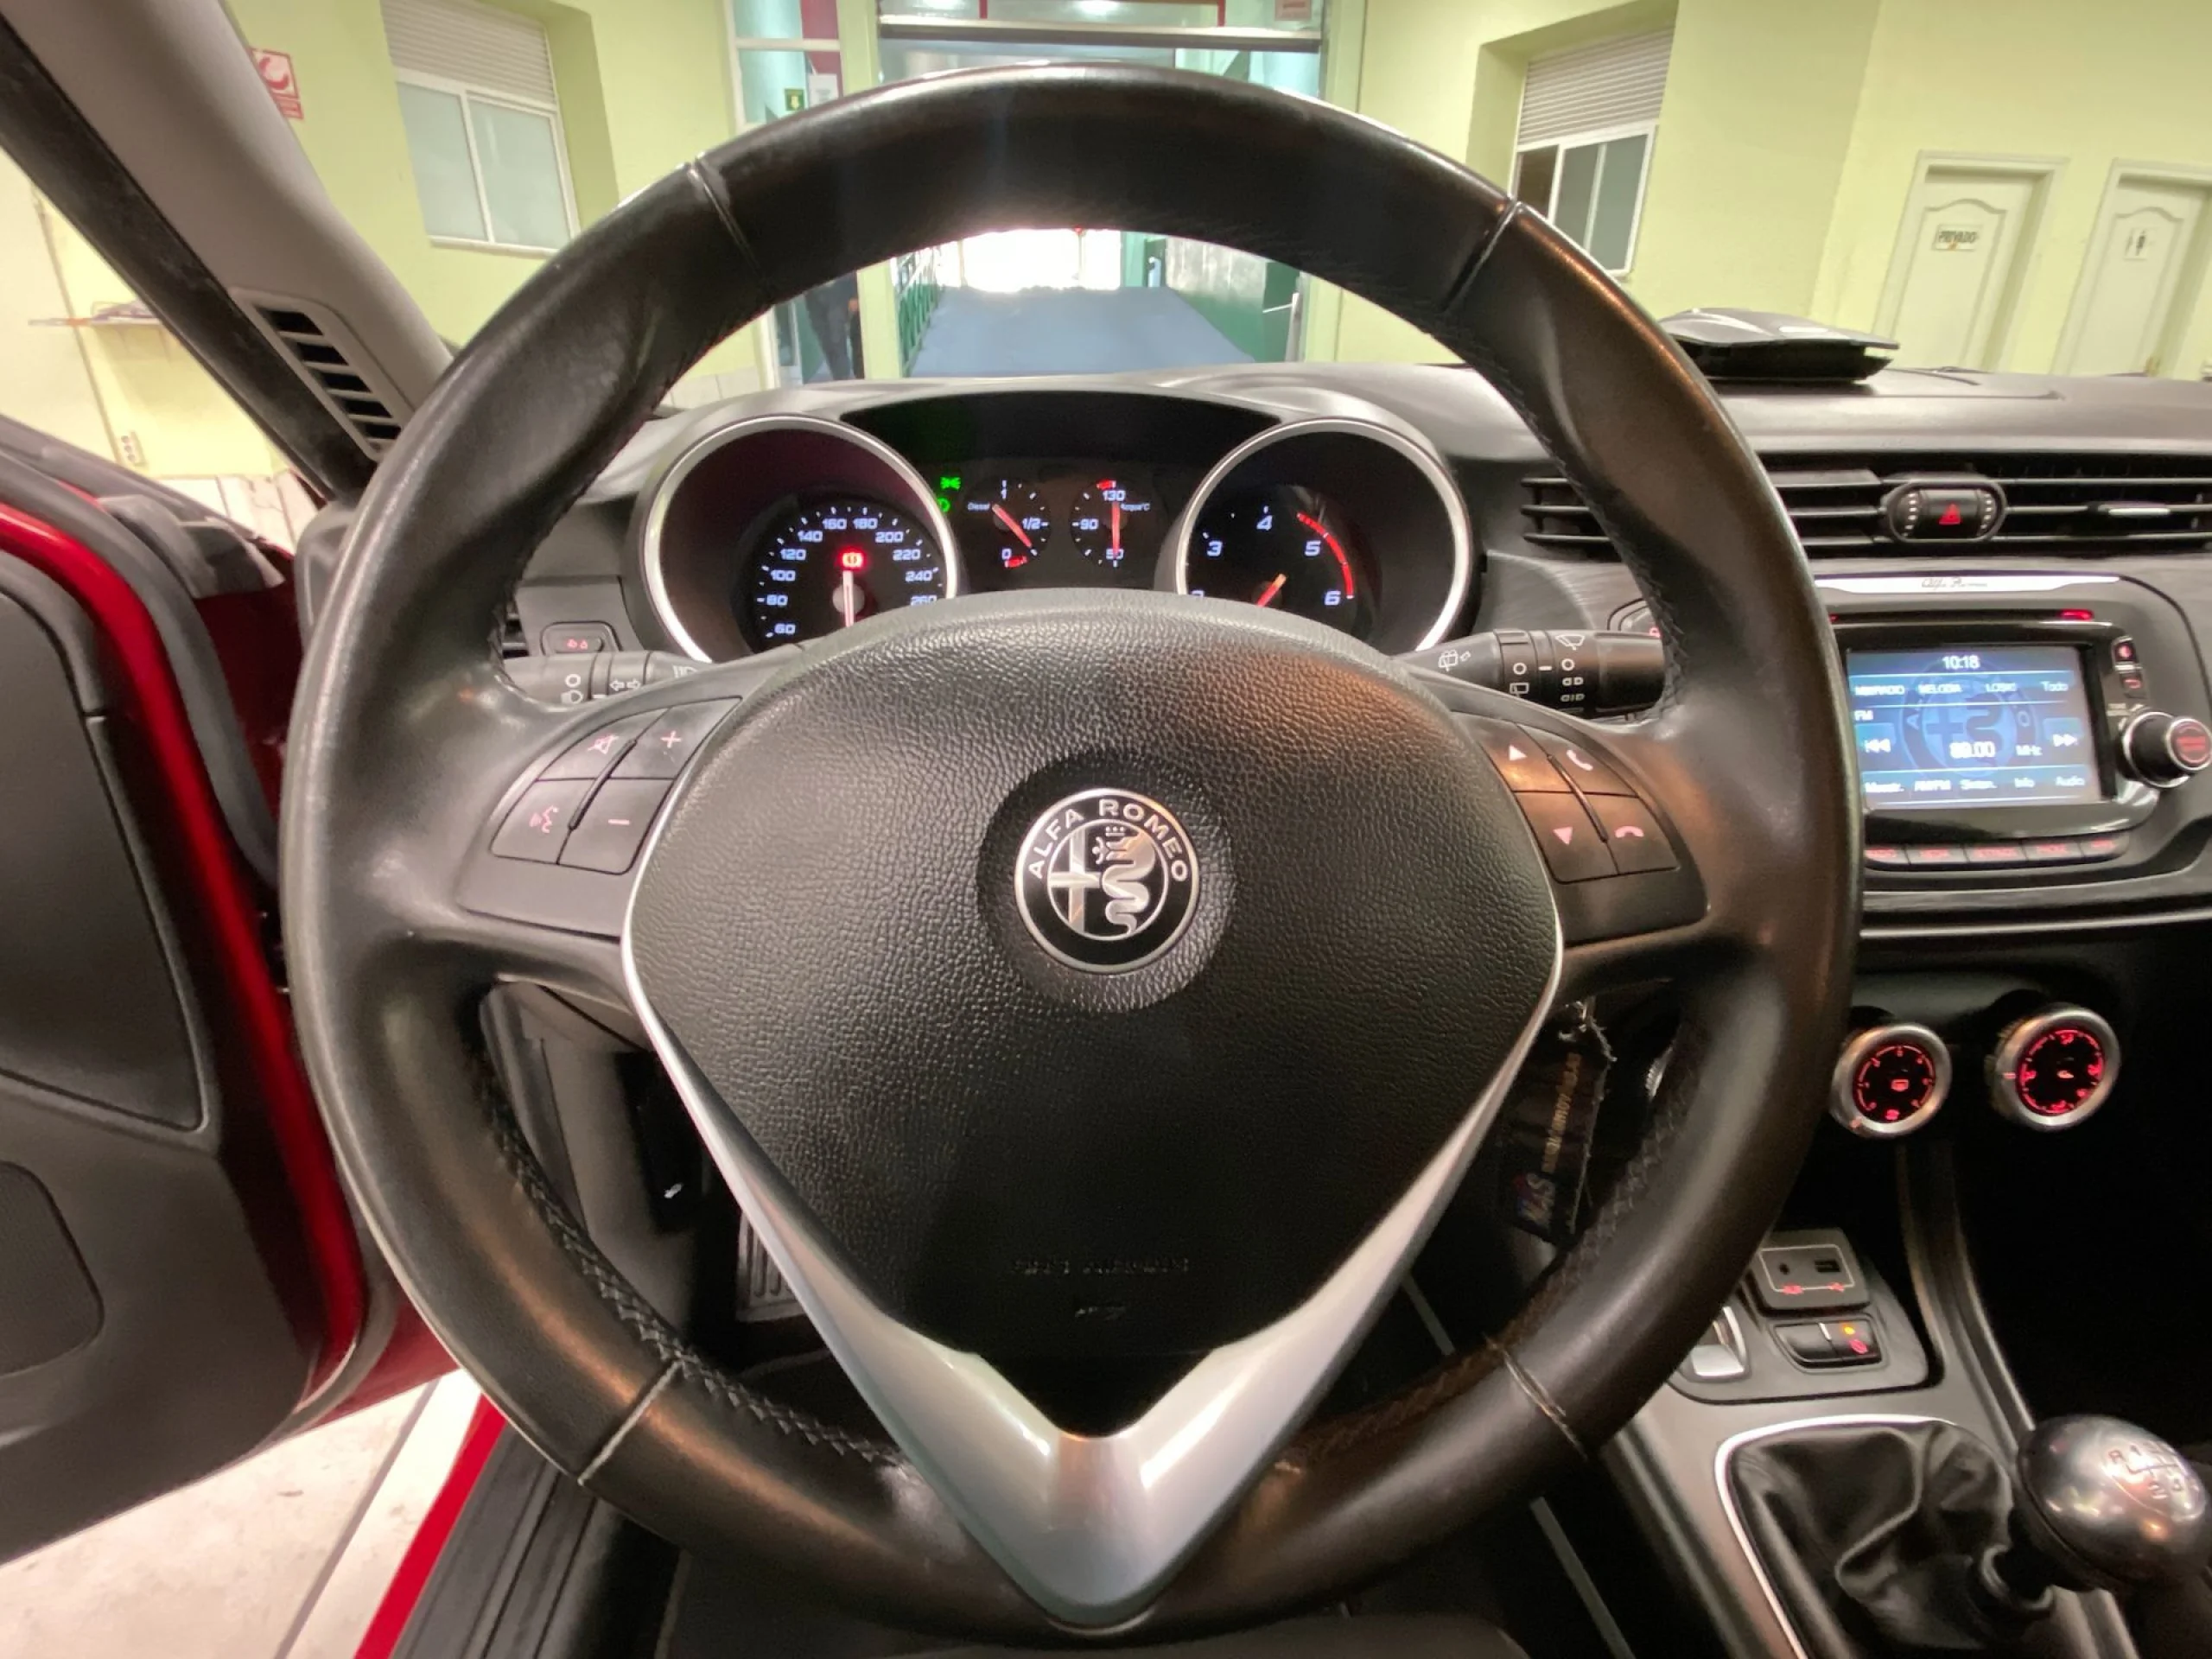 Alfa Romeo Giulietta 1.6 JTD Giulietta 88 kW (120 CV) - Foto 11